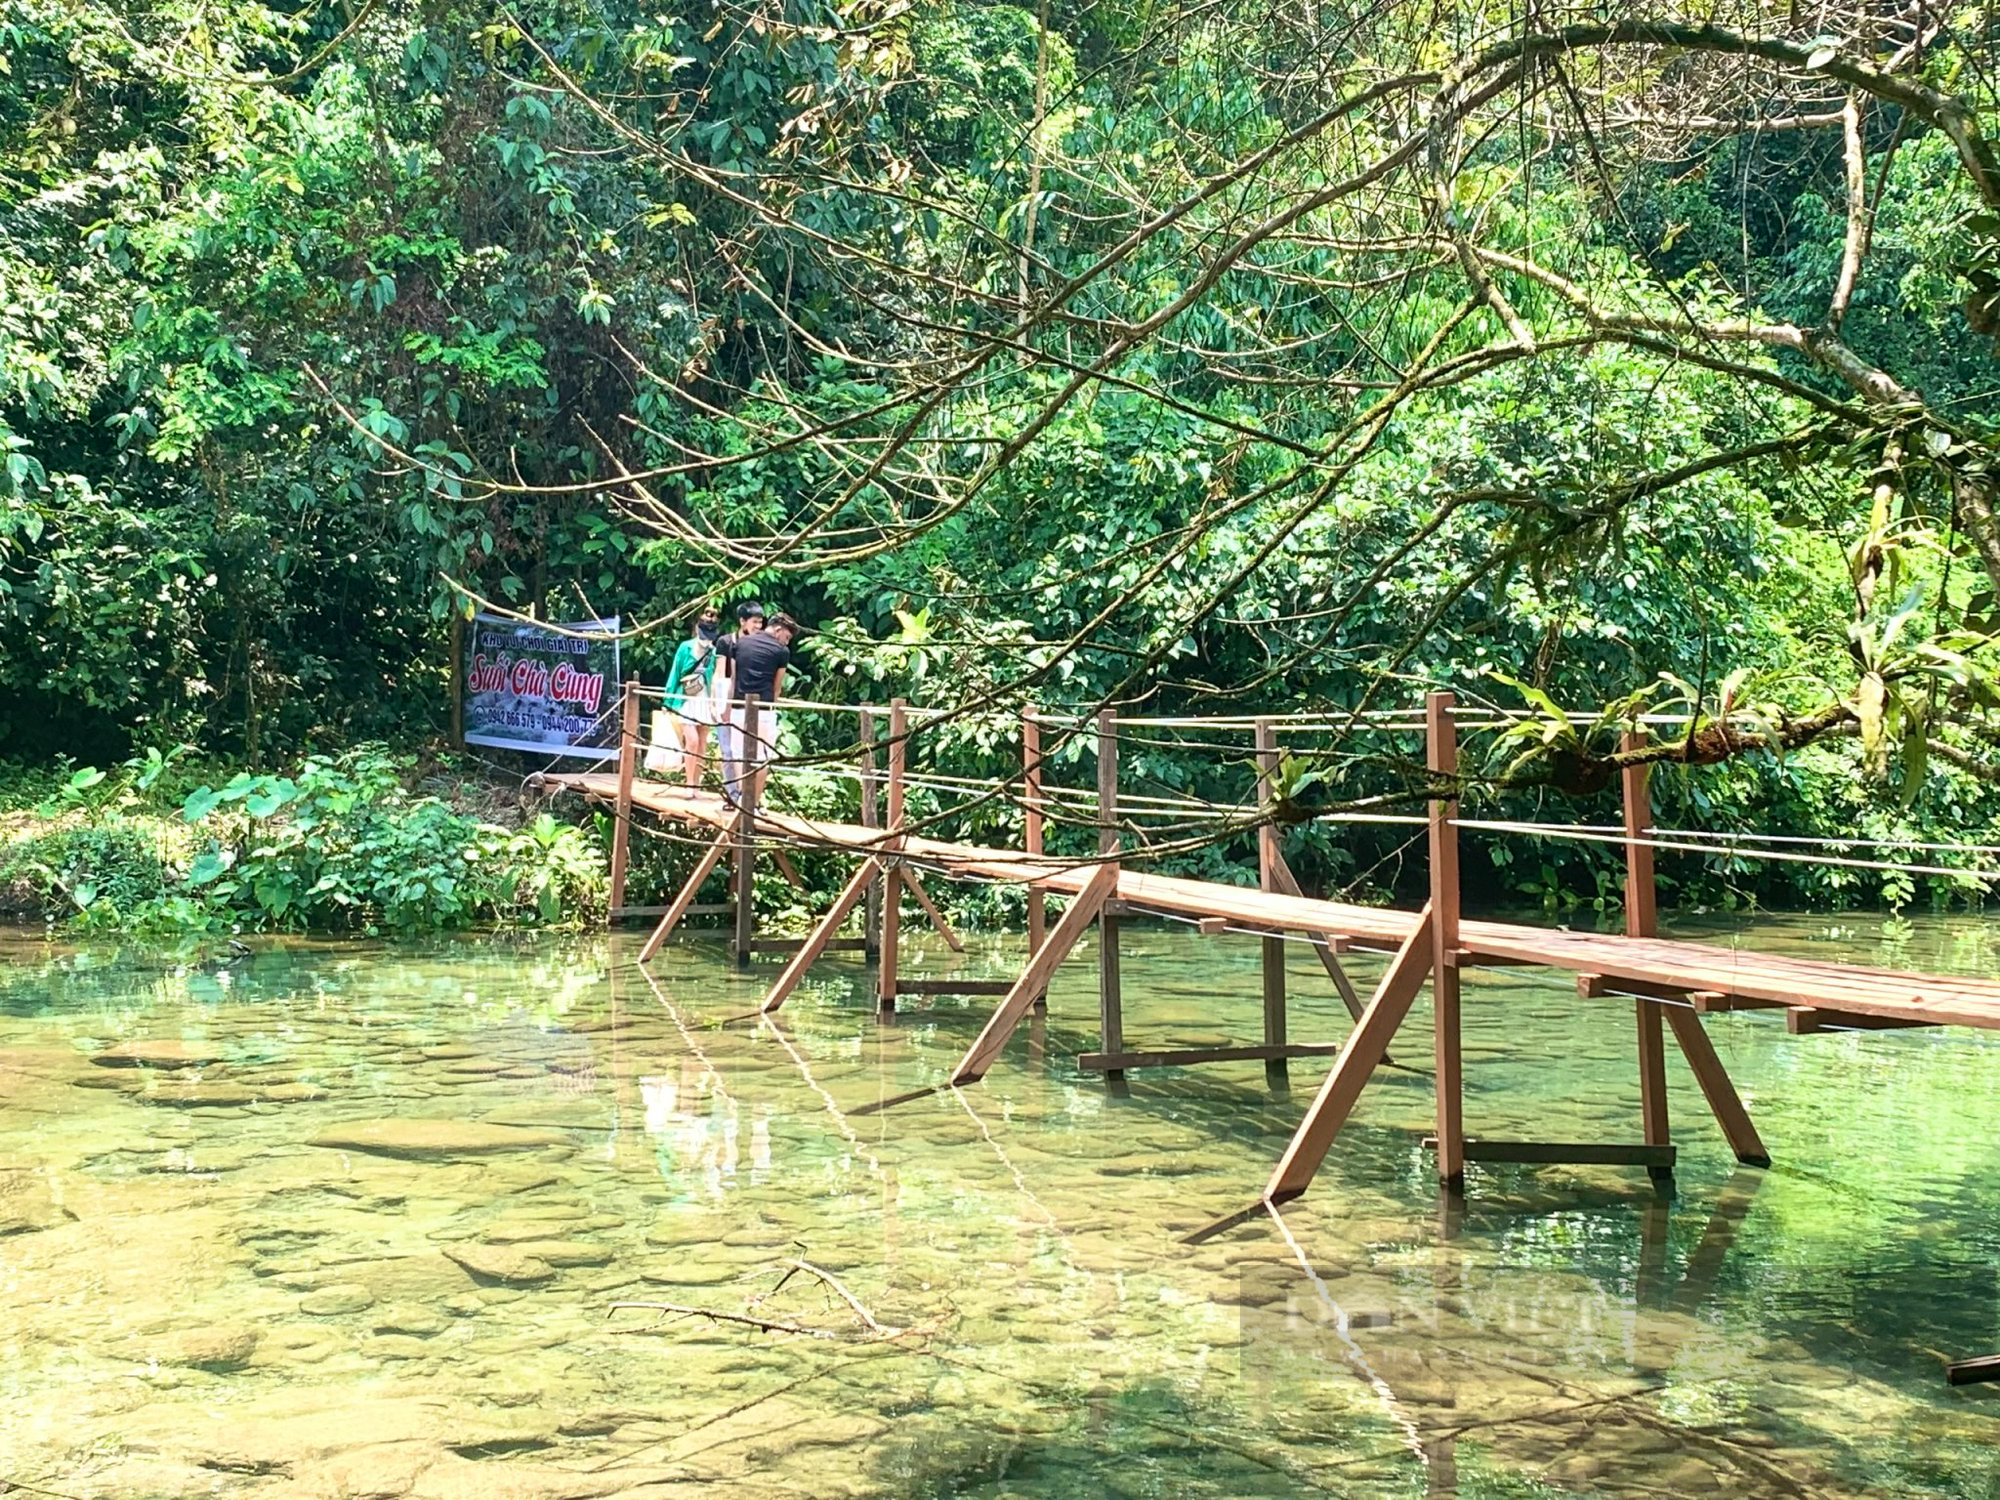 Vụ khu vui chơi giải trí không phép giữa rừng phòng hộ ở Quảng Bình: Chính quyền xã, chủ rừng nhận trách nhiệm - Ảnh 1.